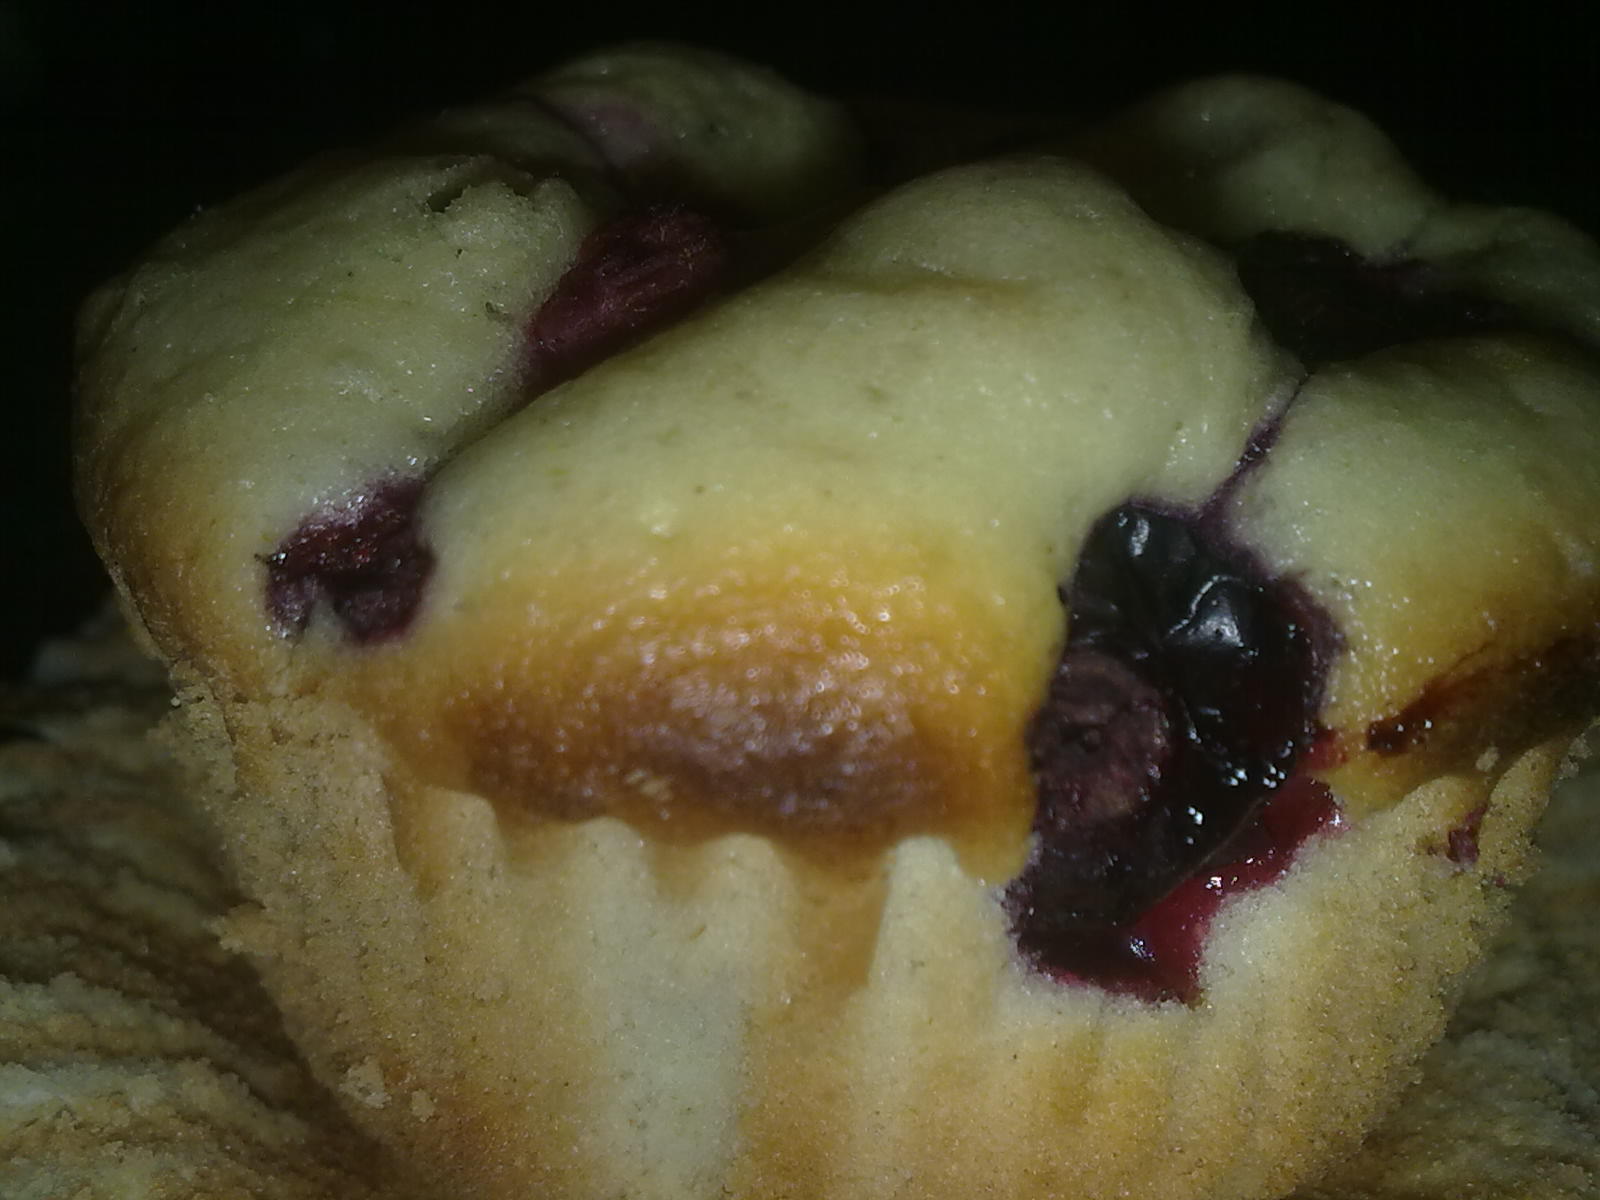 Muffins sau briose cu fructe de padure asortate